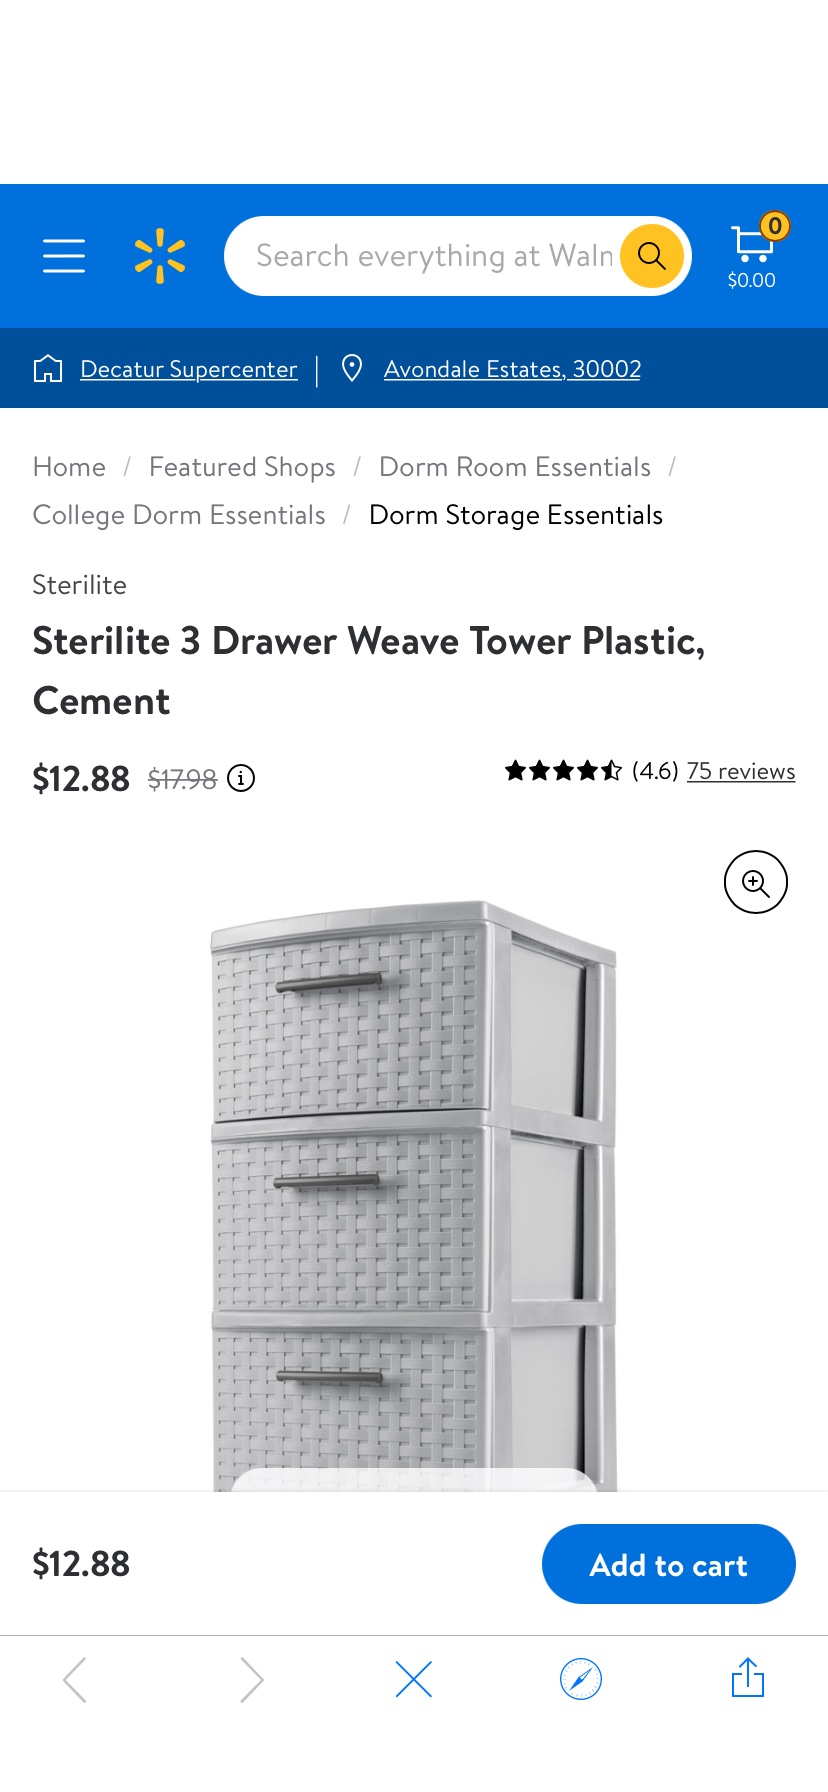 3层抽屉储存柜。Sterilite 3 Drawer Weave Tower Plastic